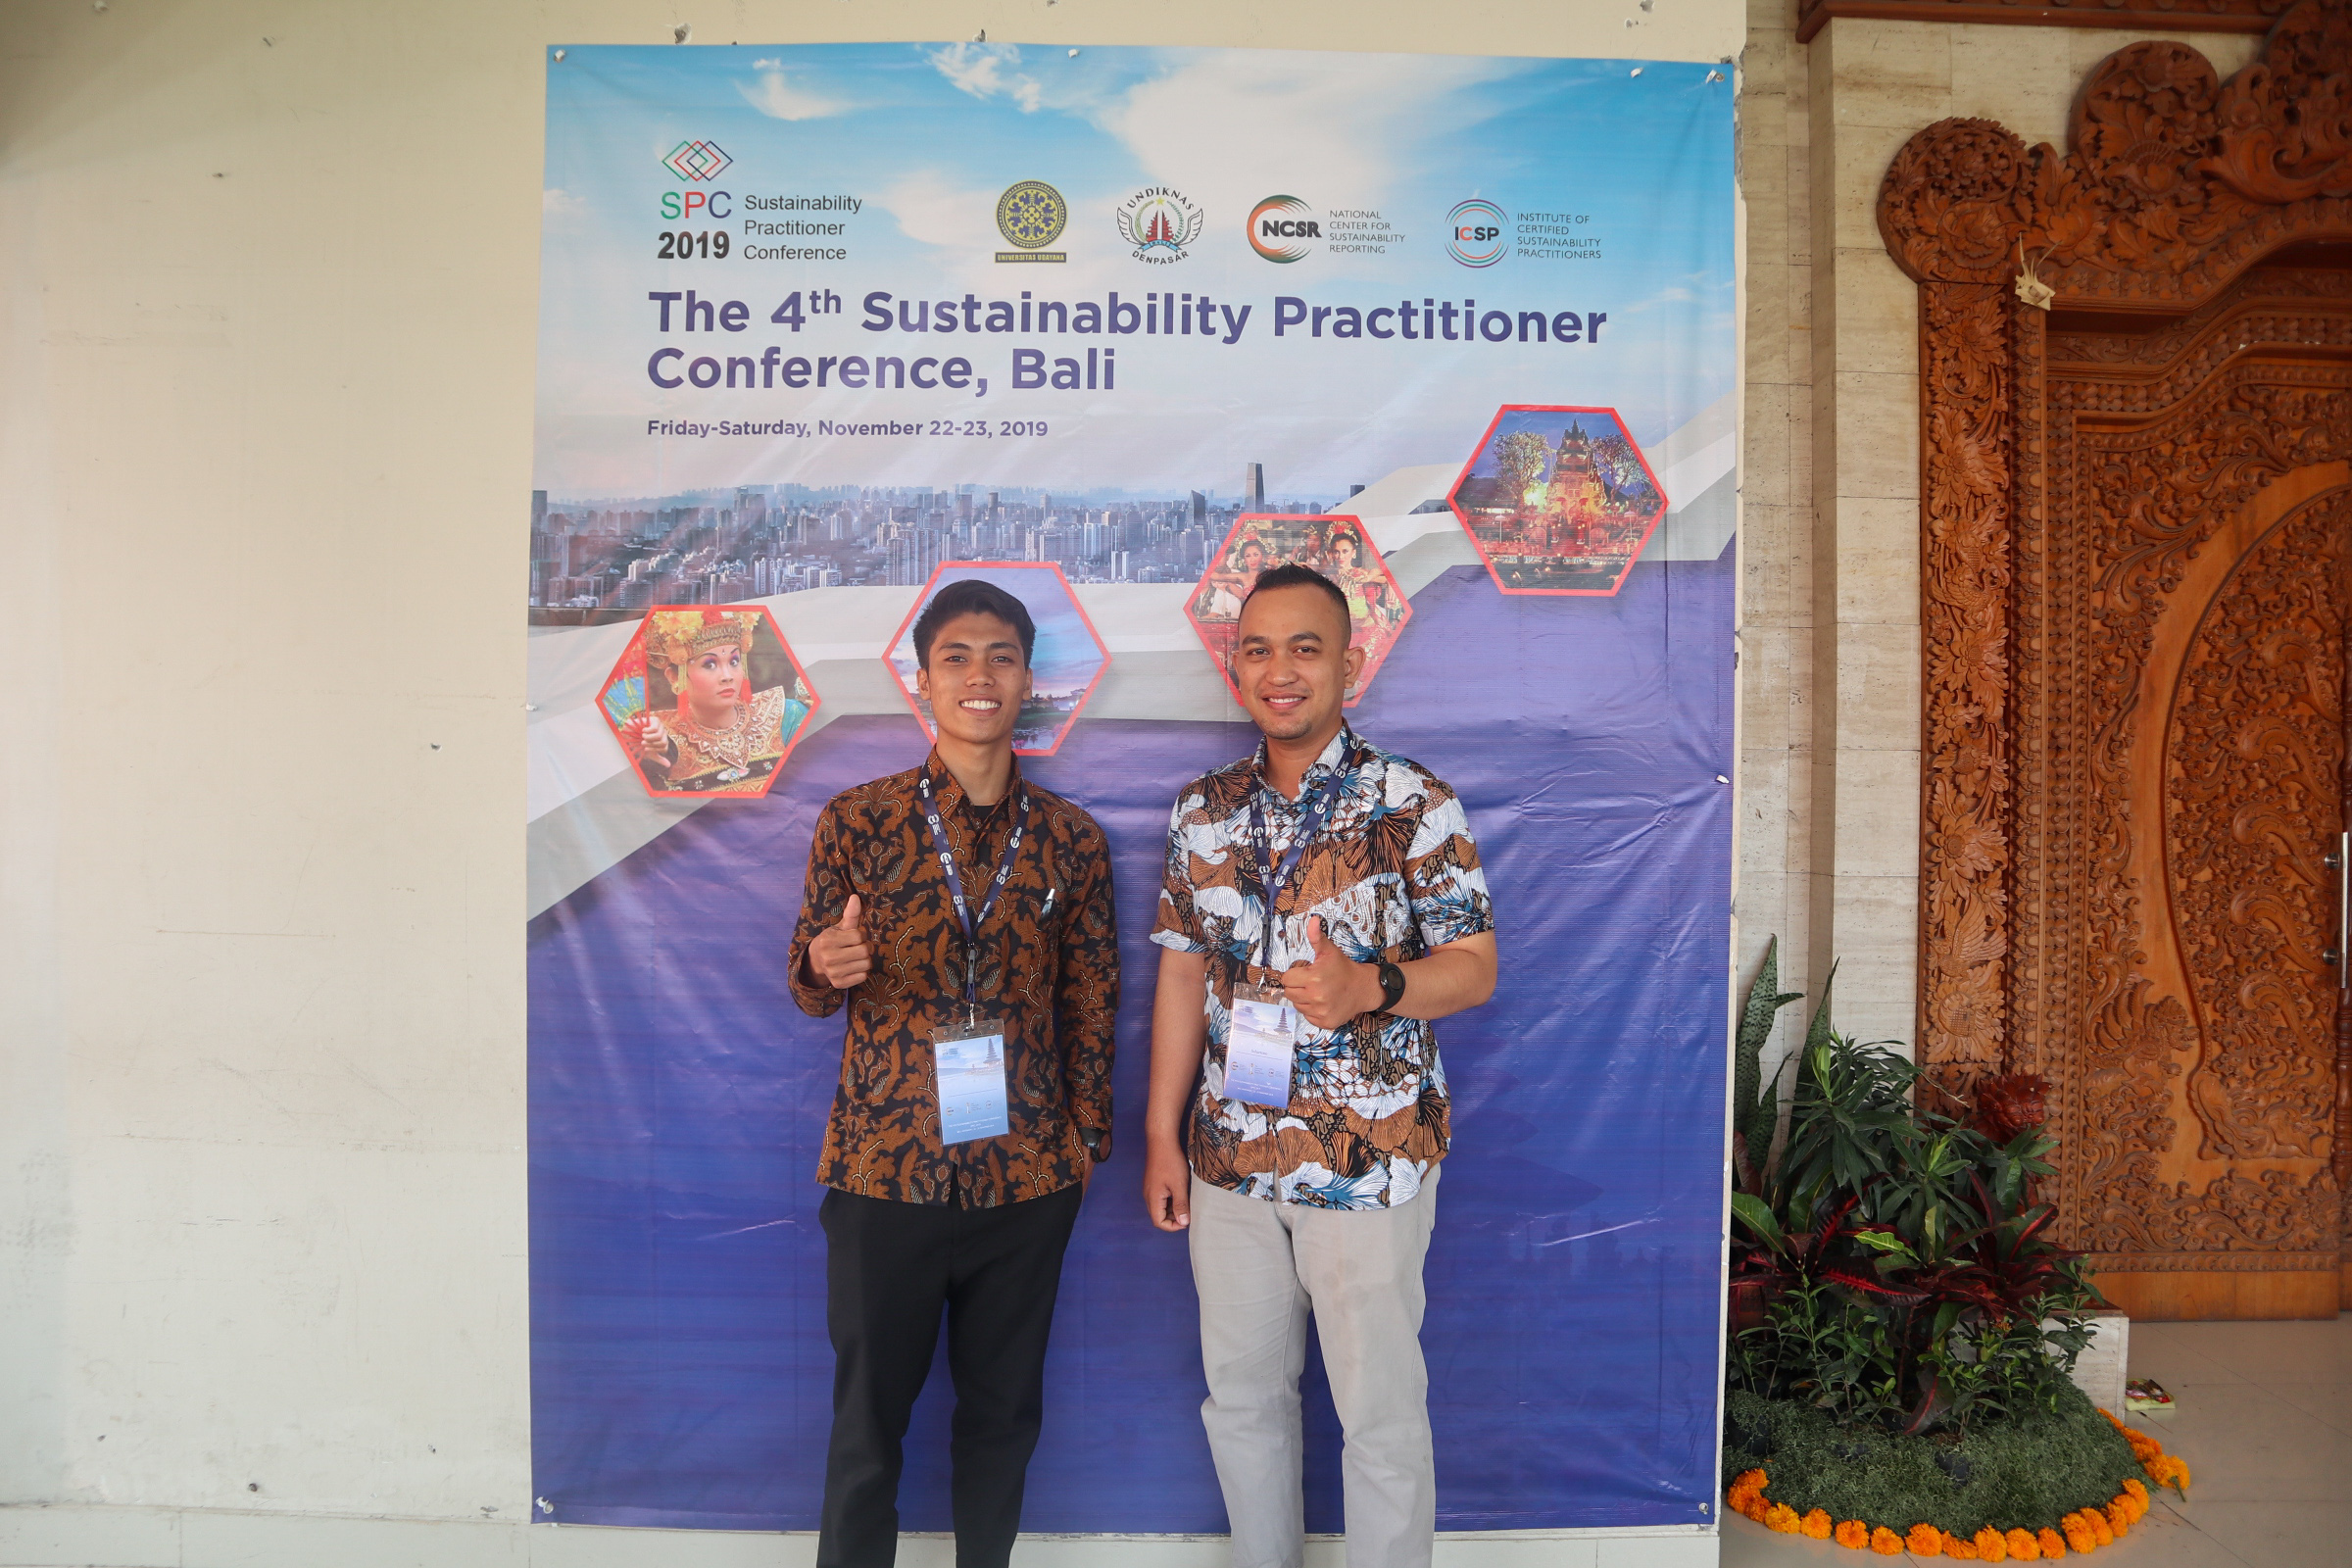  Jurusan Akuntansi UIN Alauddin Makassar Berpartisipasi Dalam Konfrensi Internasional di Bali